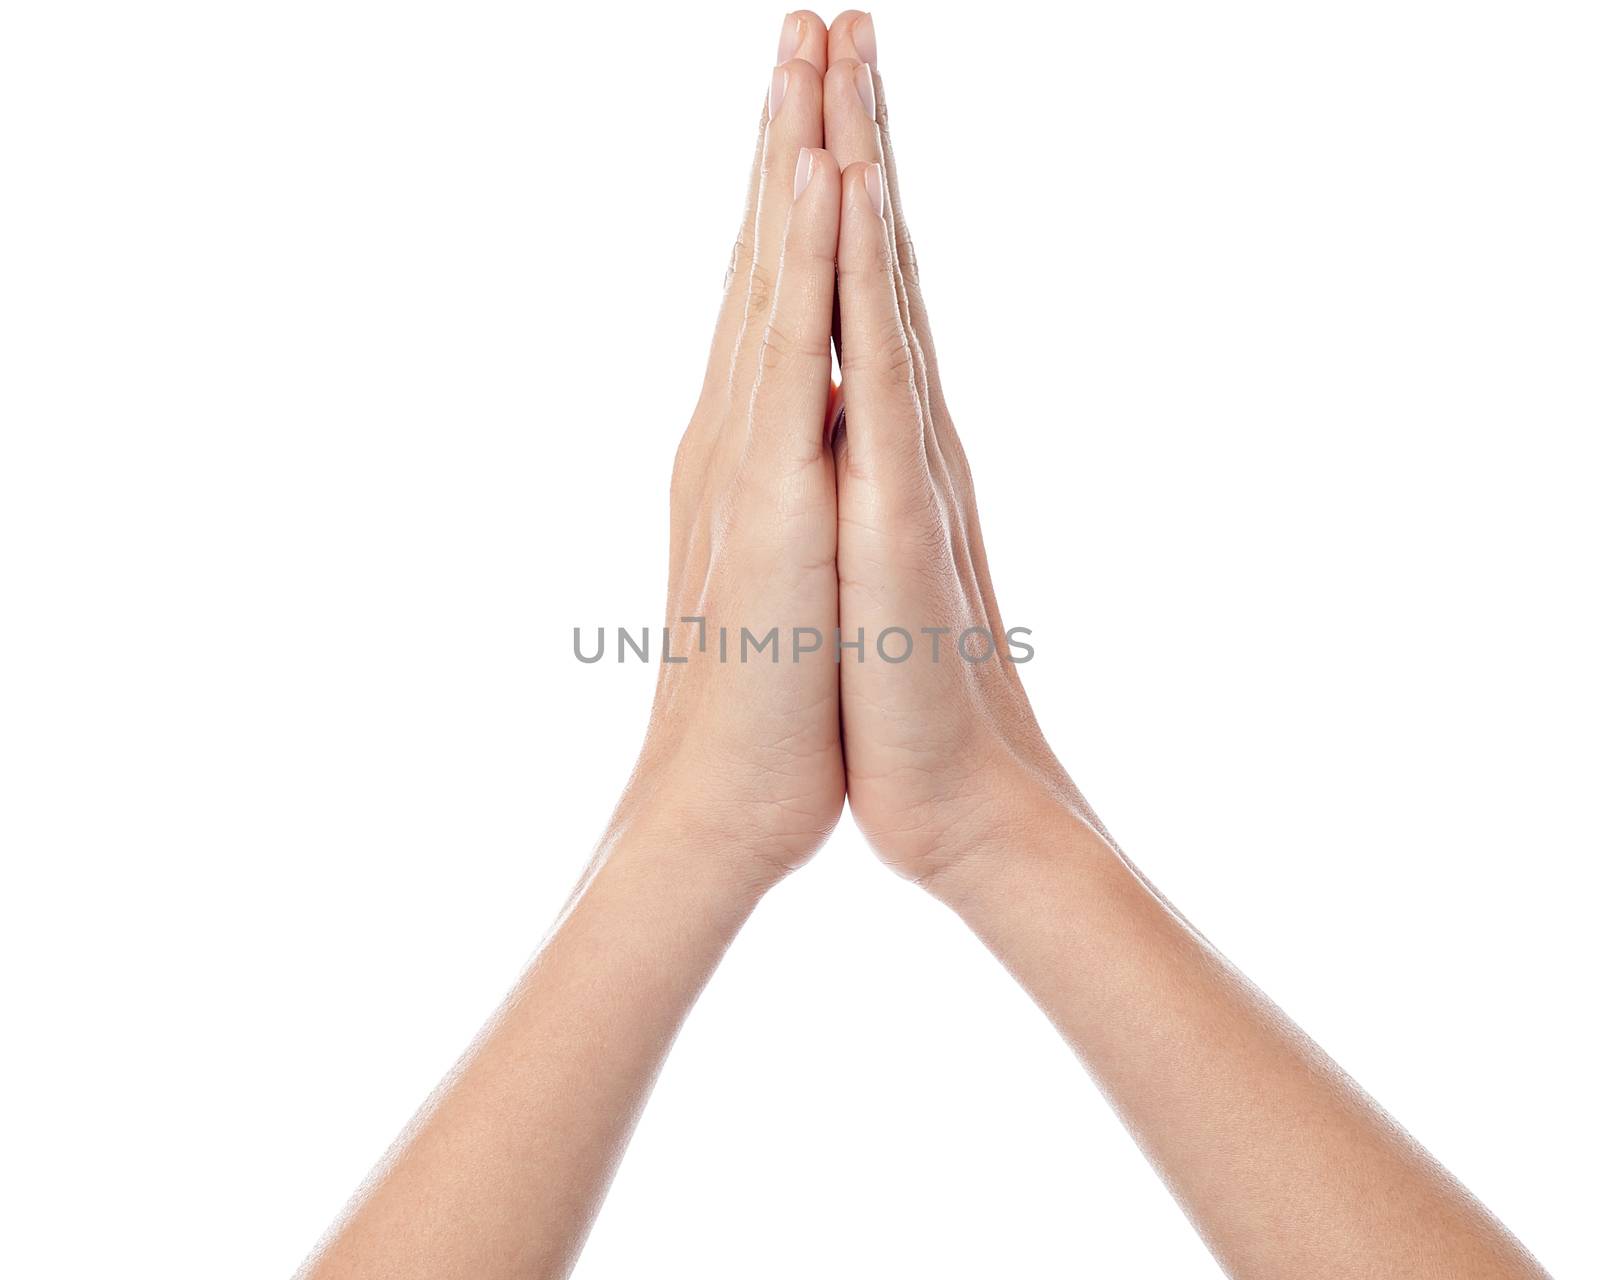 Human hands praying